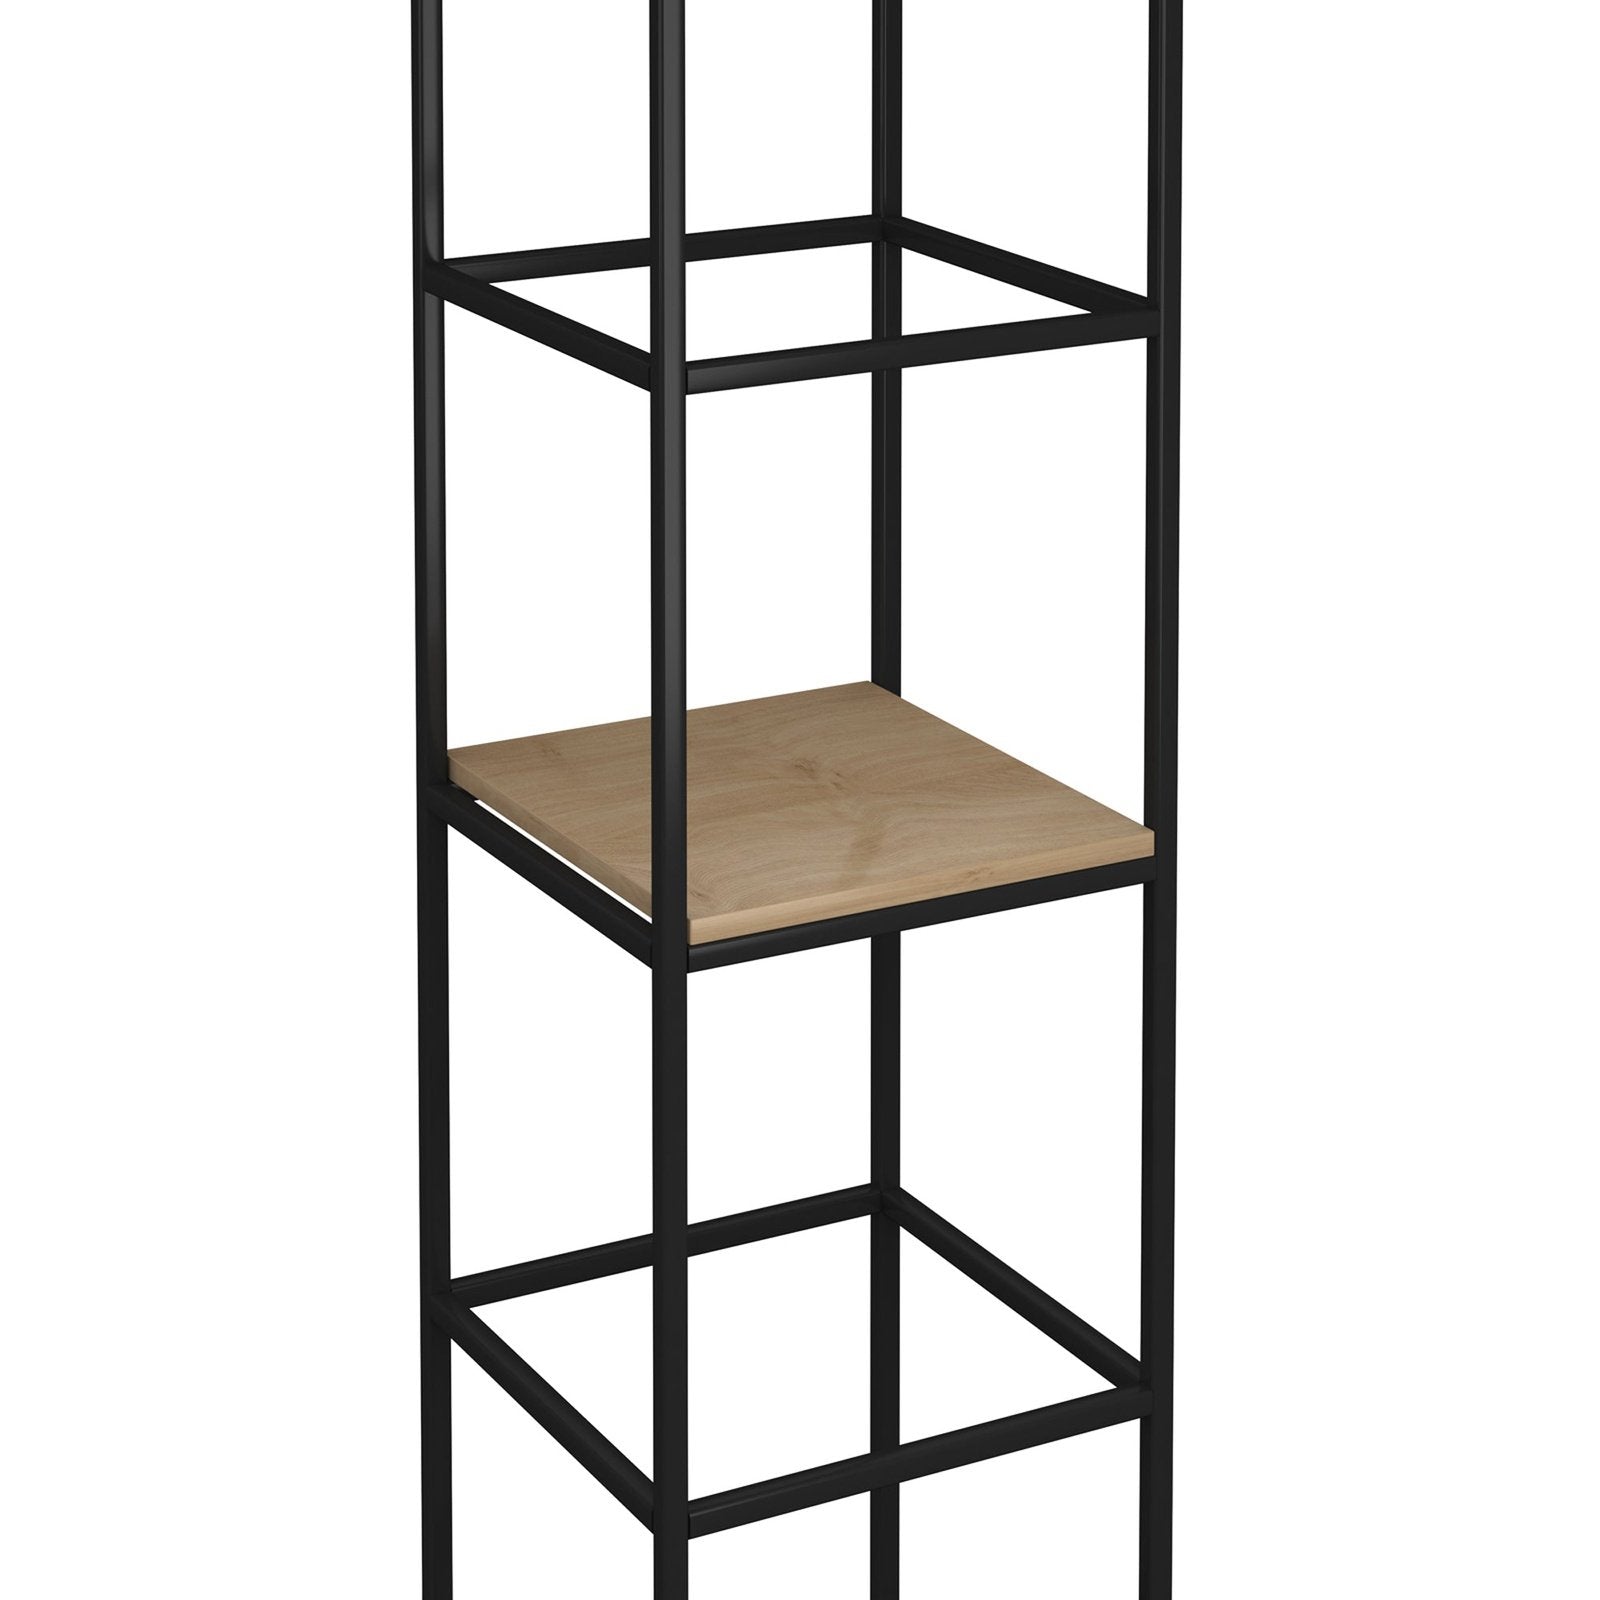 Flux modular storage single wooden inner shelf - kendal oak - Office Products Online